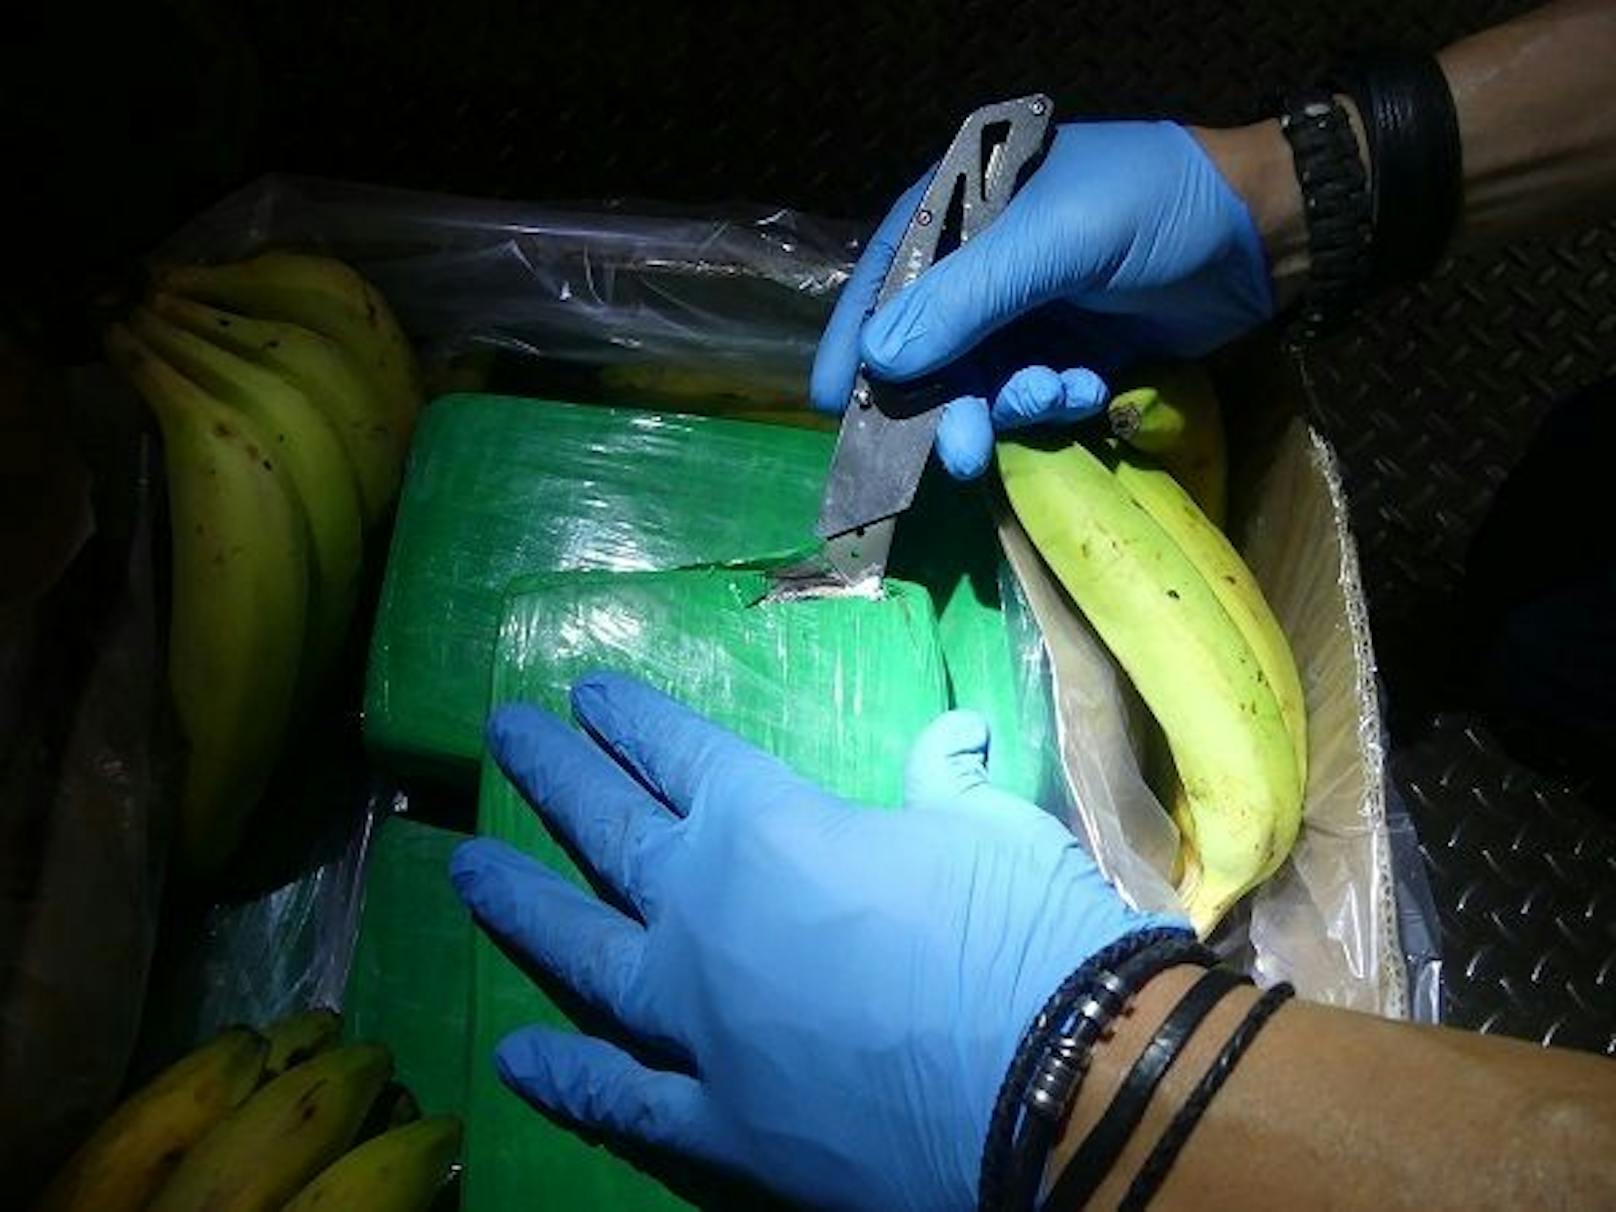 Die Kokain-Päckchen waren unter Bananen versteckt.